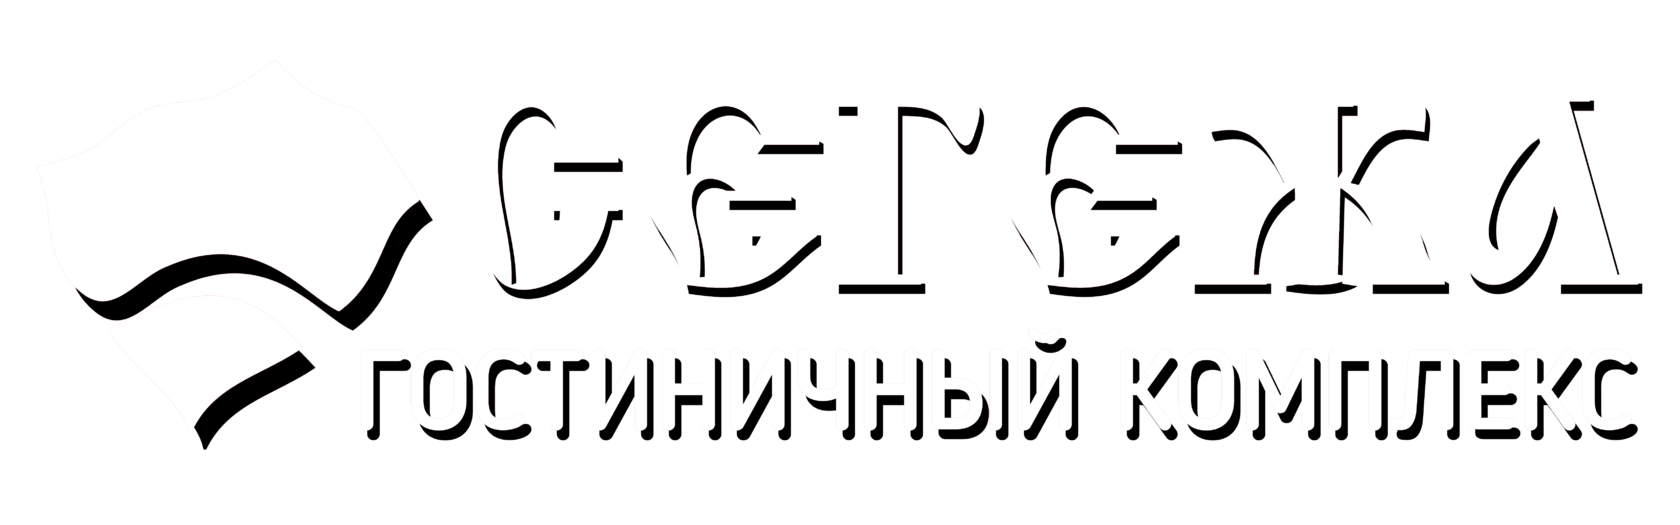 Логотип гостиничного комплекса "Сегежа"